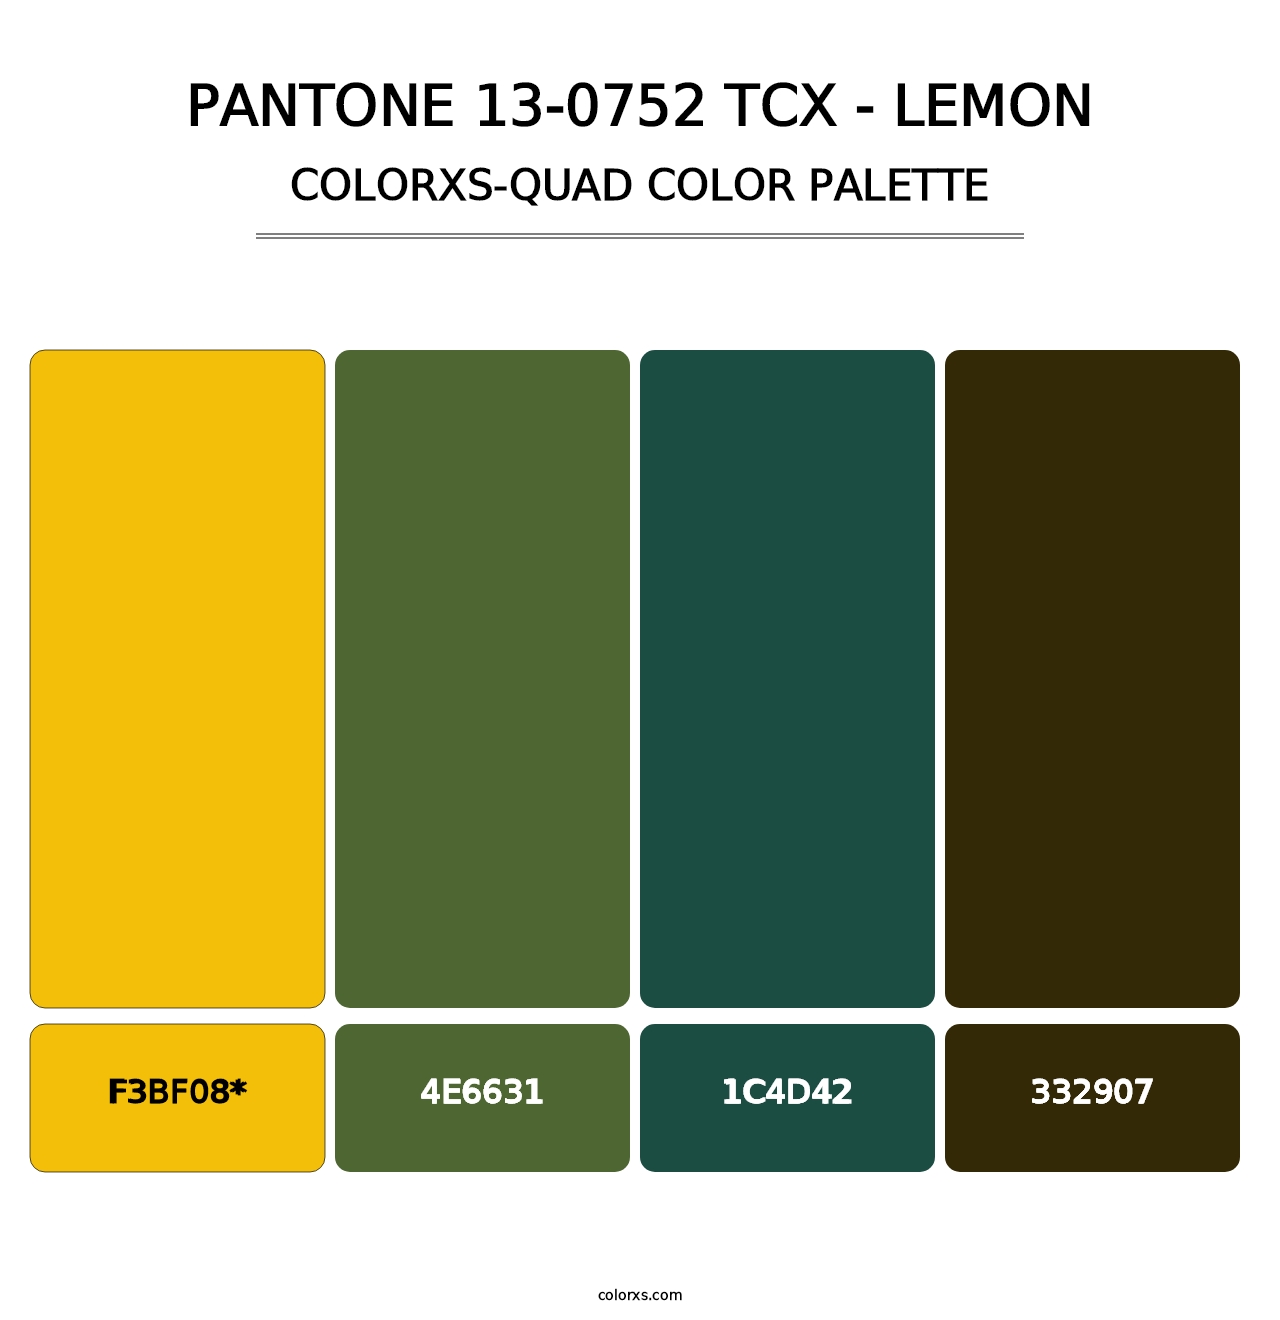 PANTONE 13-0752 TCX - Lemon - Colorxs Quad Palette